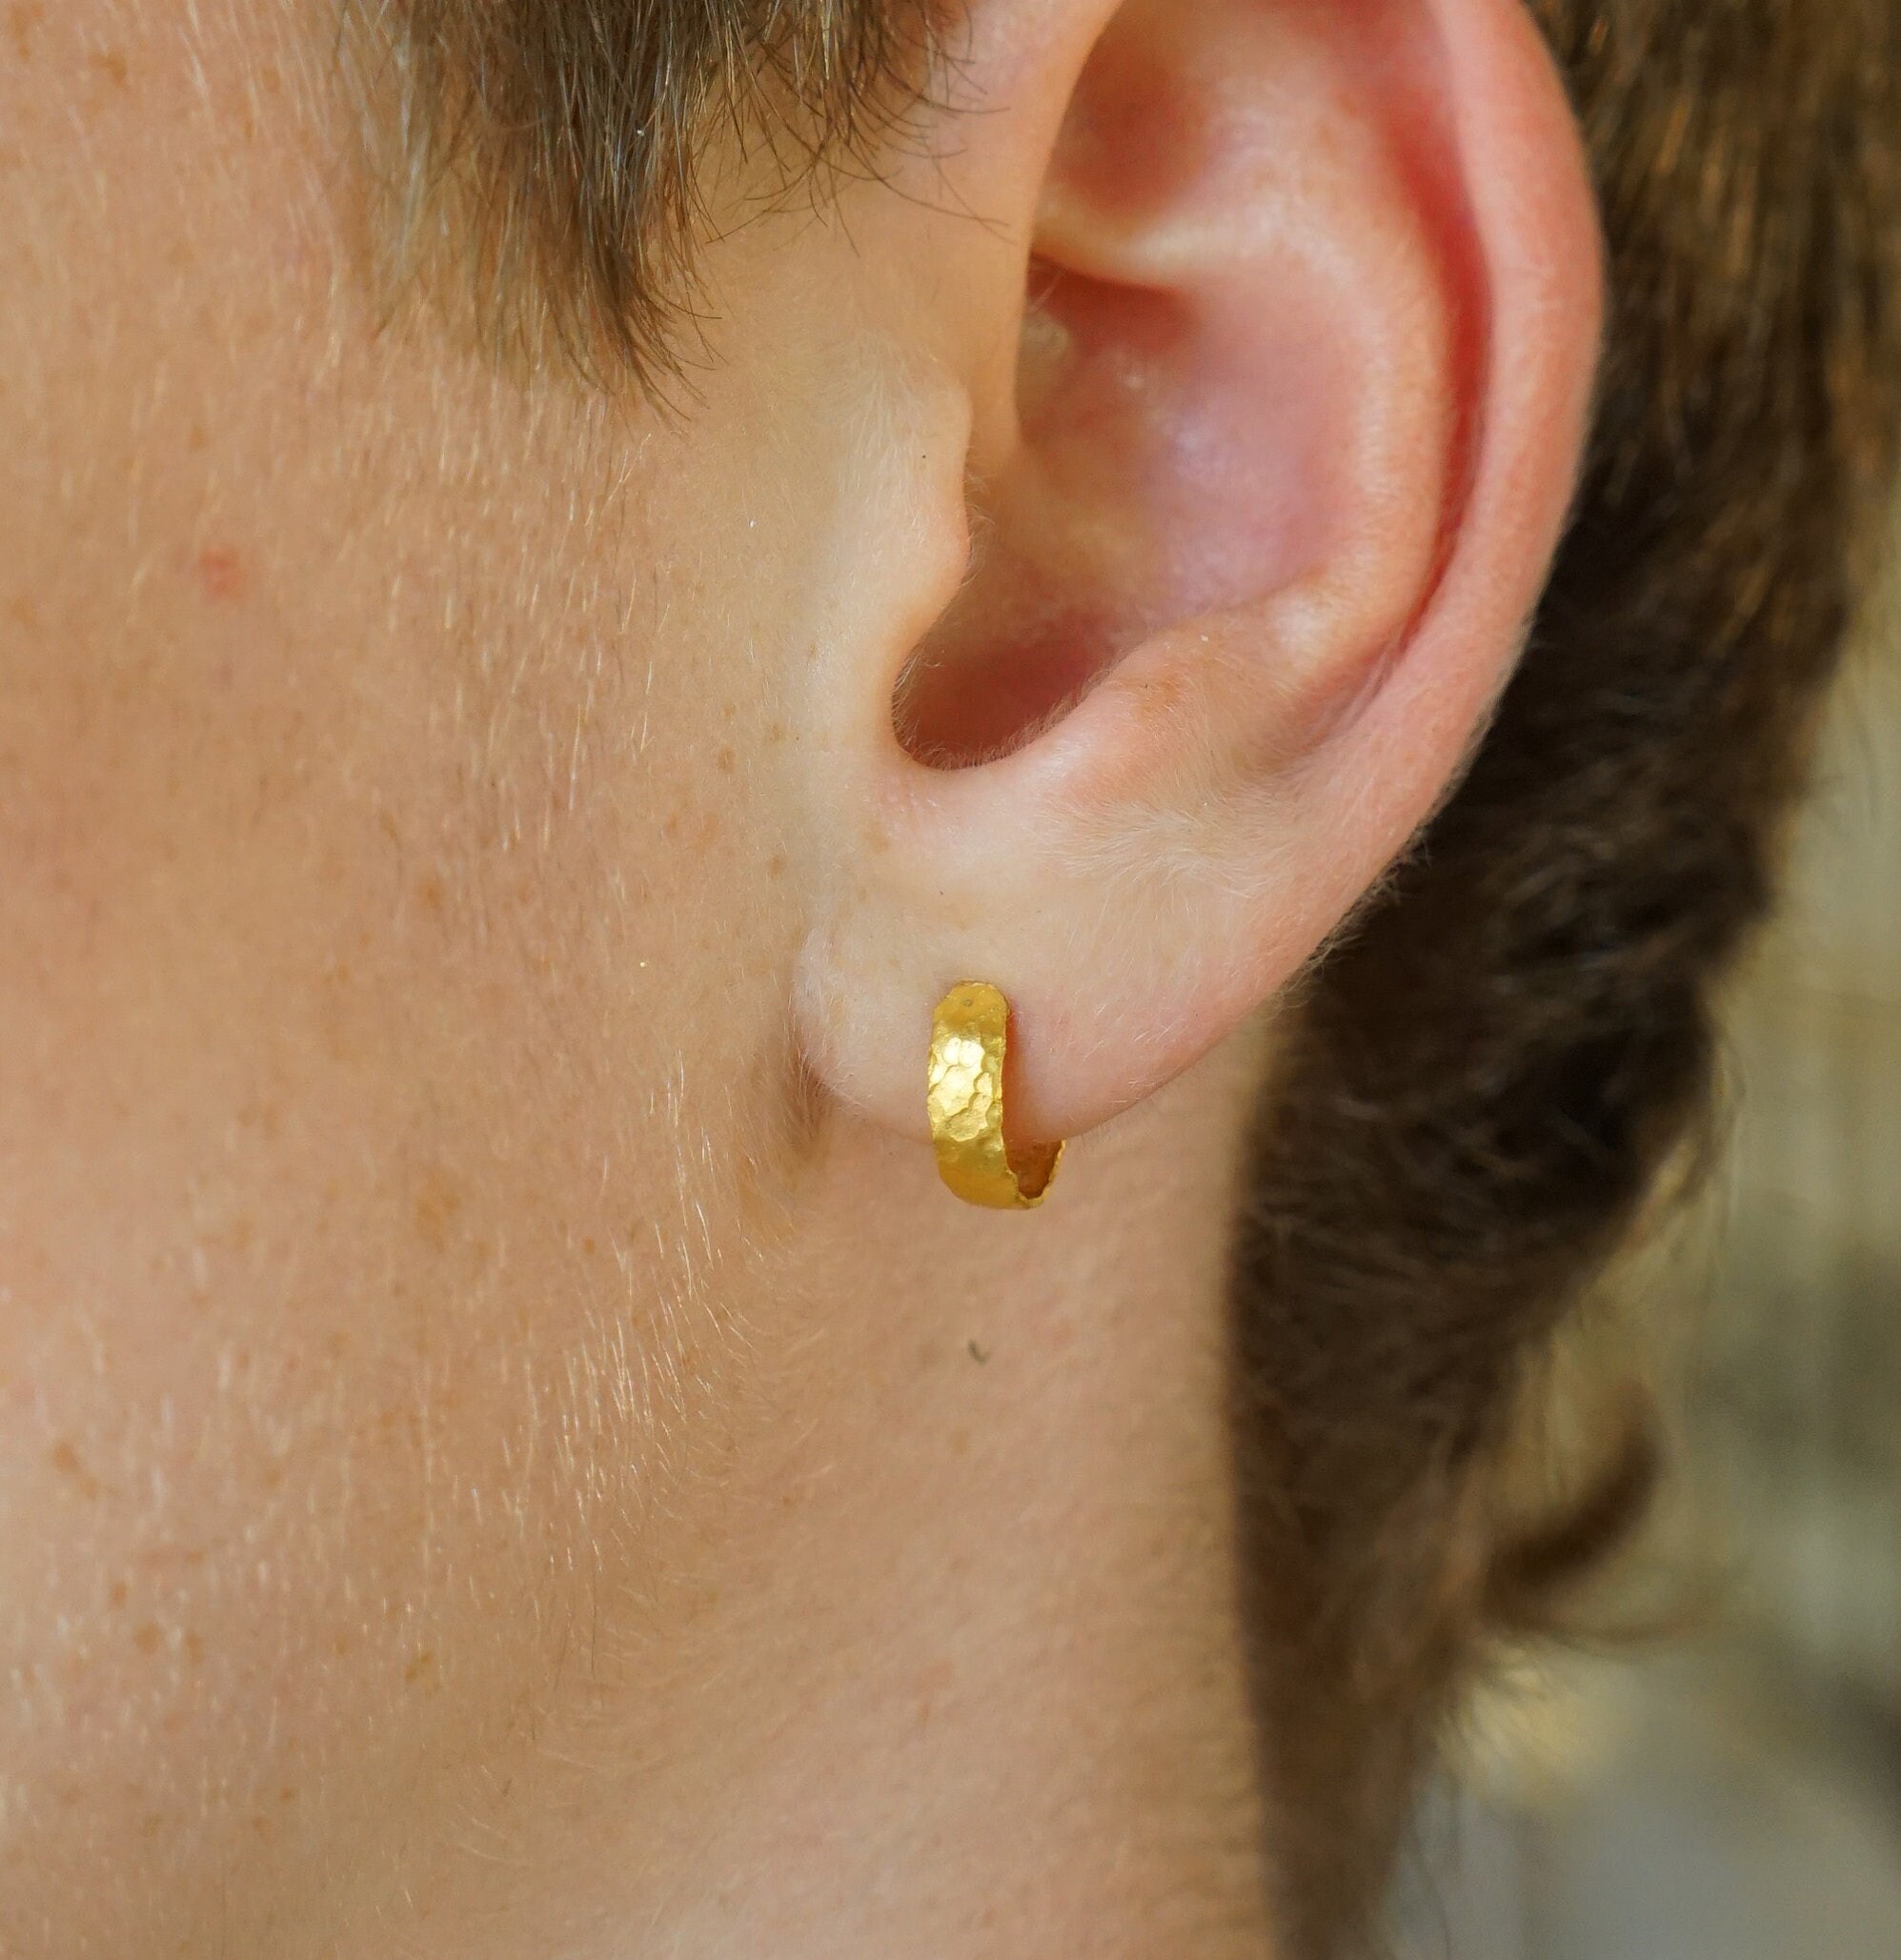 Share more than 175 24 karat gold earrings online